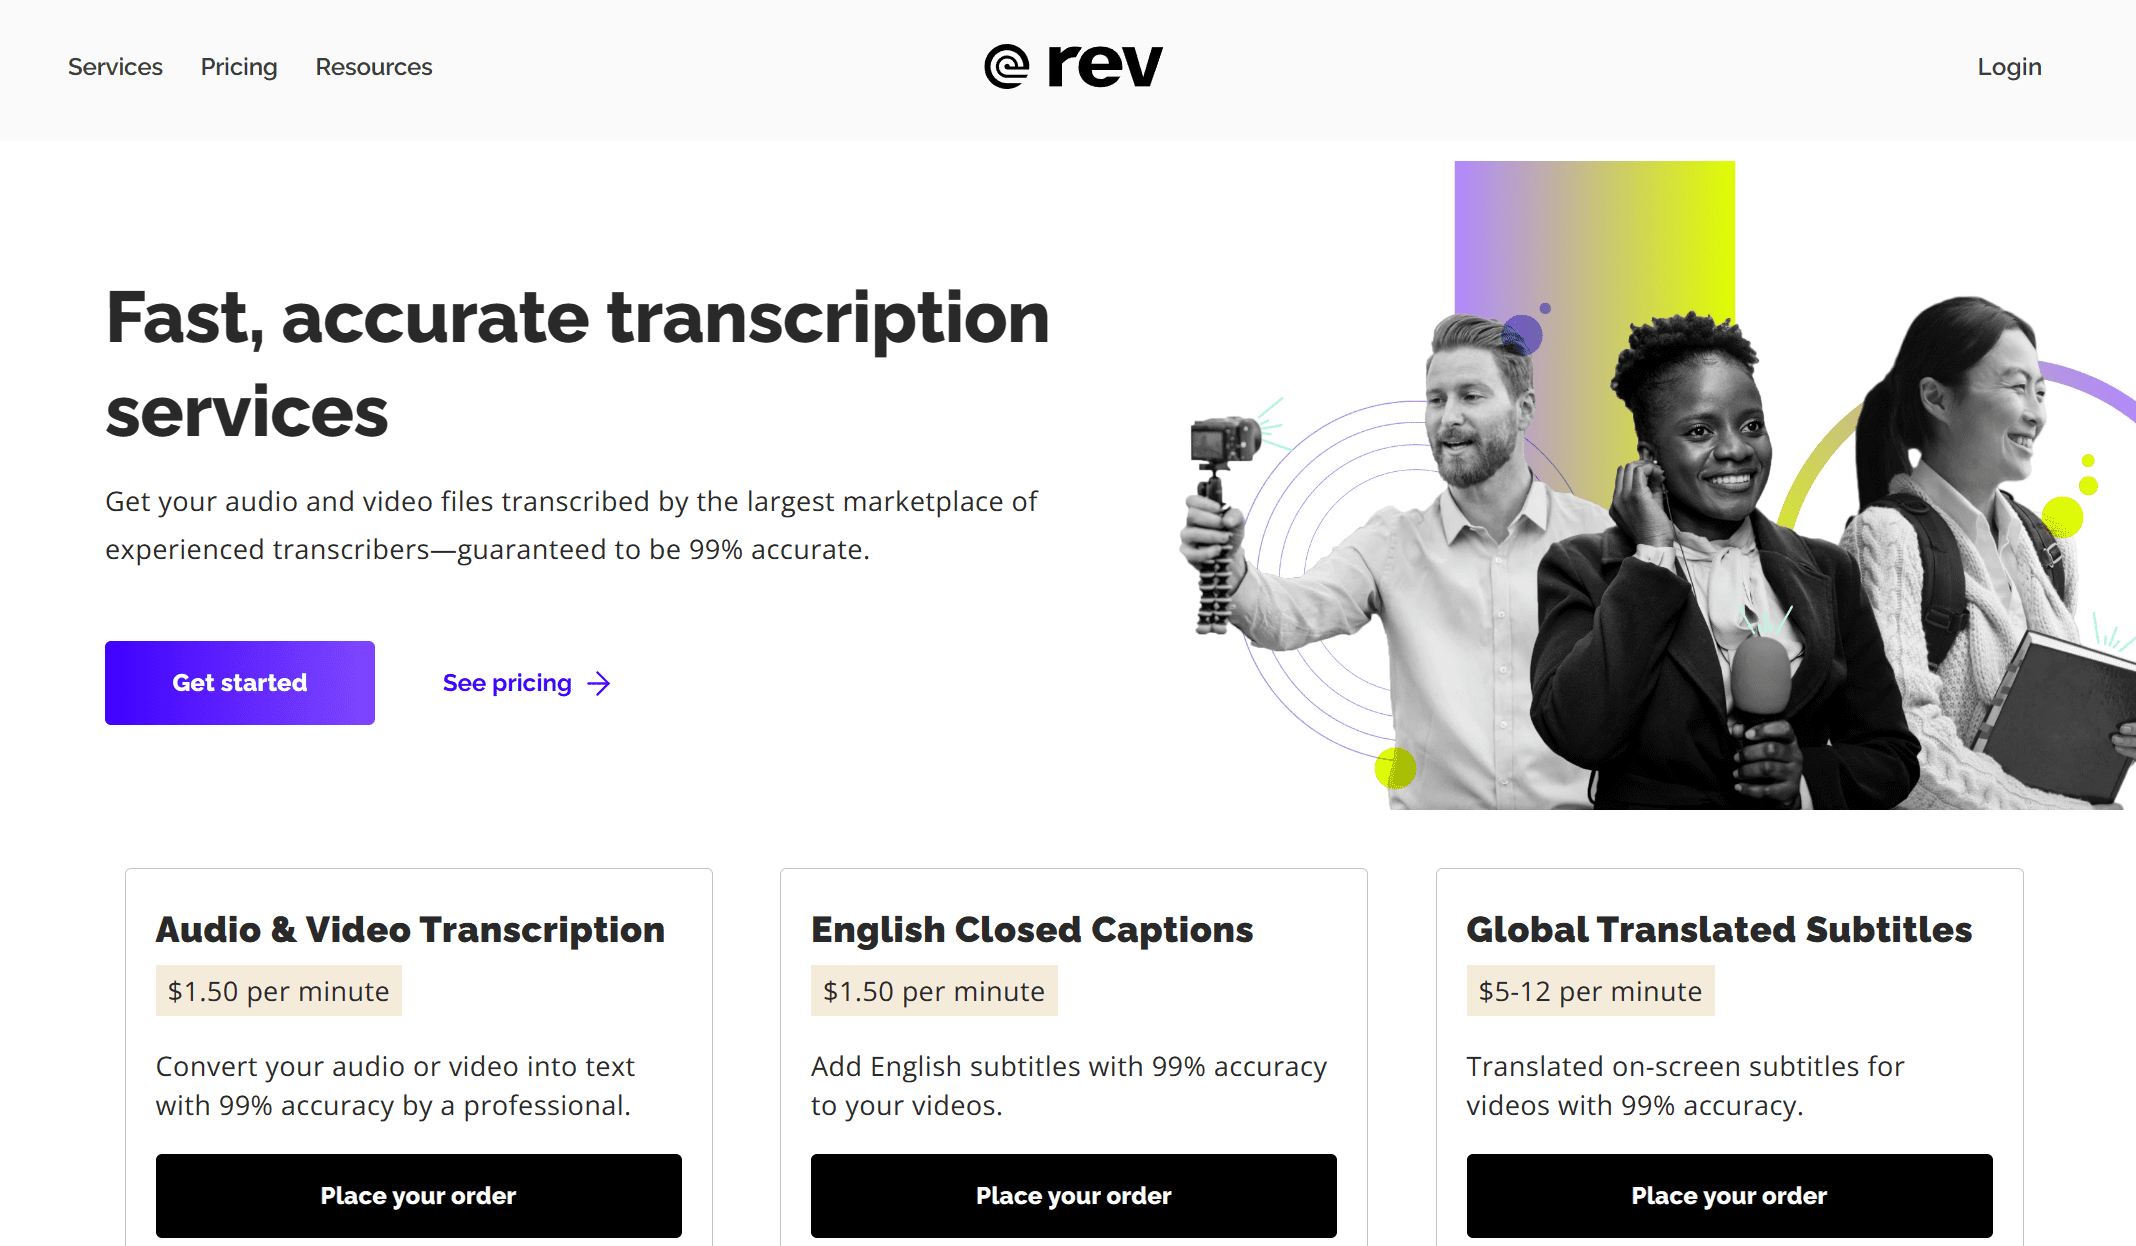 Rev ist die selbsternannte beste Software zur Transkription von Meetings. Stimmen Sie zu?